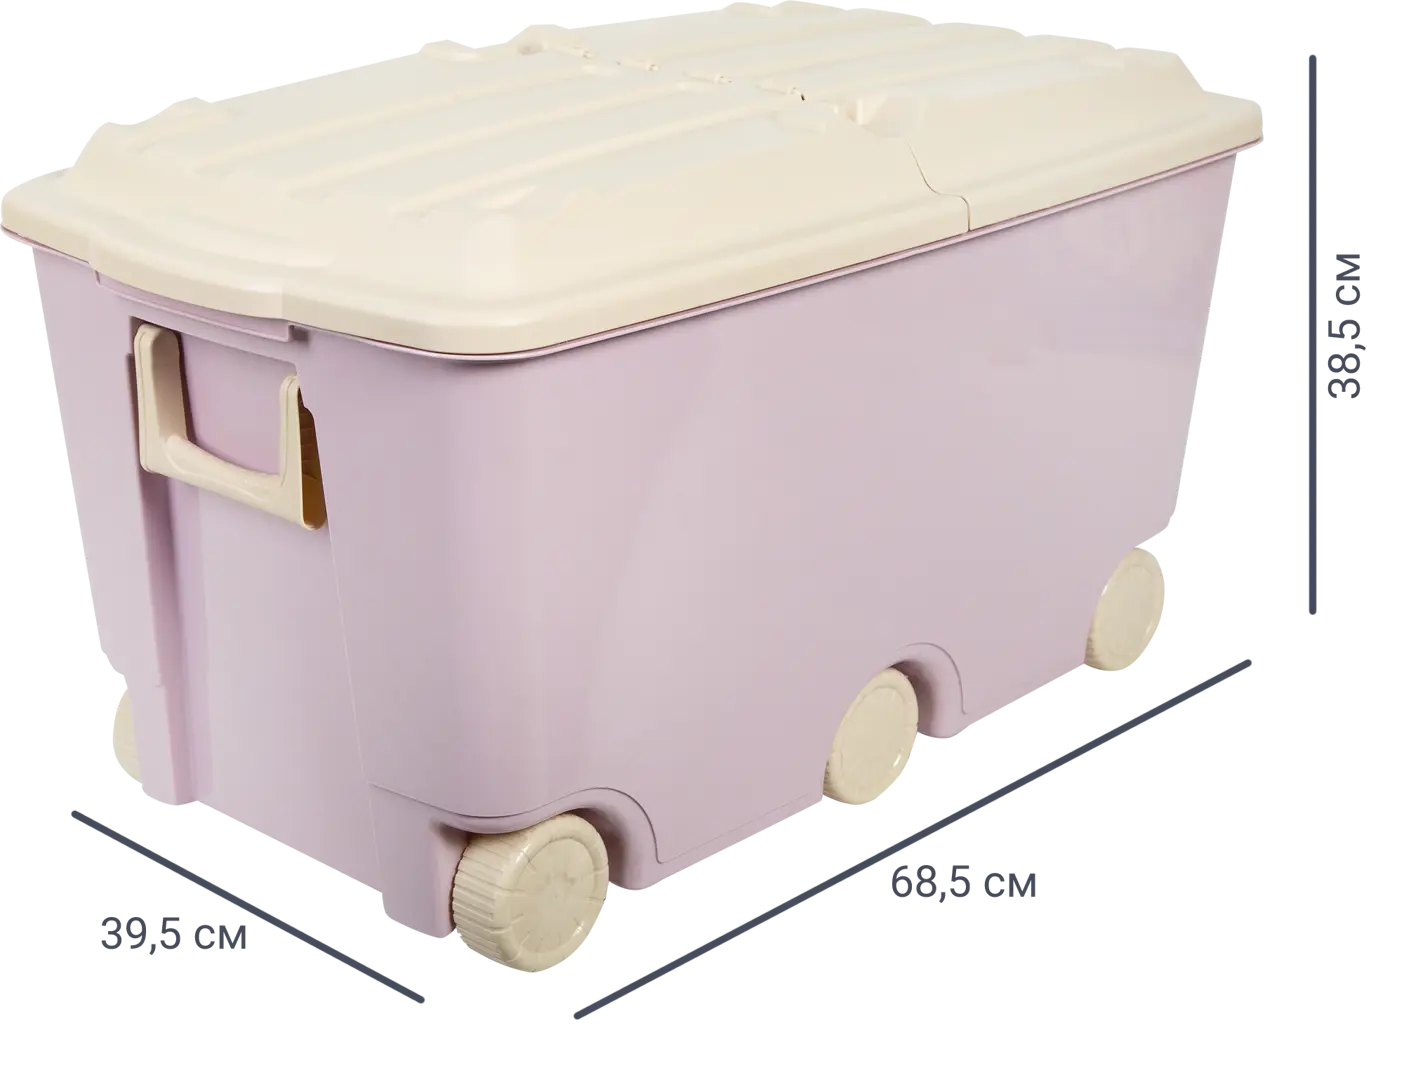 Ящик для игрушек 68.5x39.5x38.5 см 66.5 л пластик с крышкой цвет розовый комплект kinderzen arlekino парта стул выдвижной ящик розовый